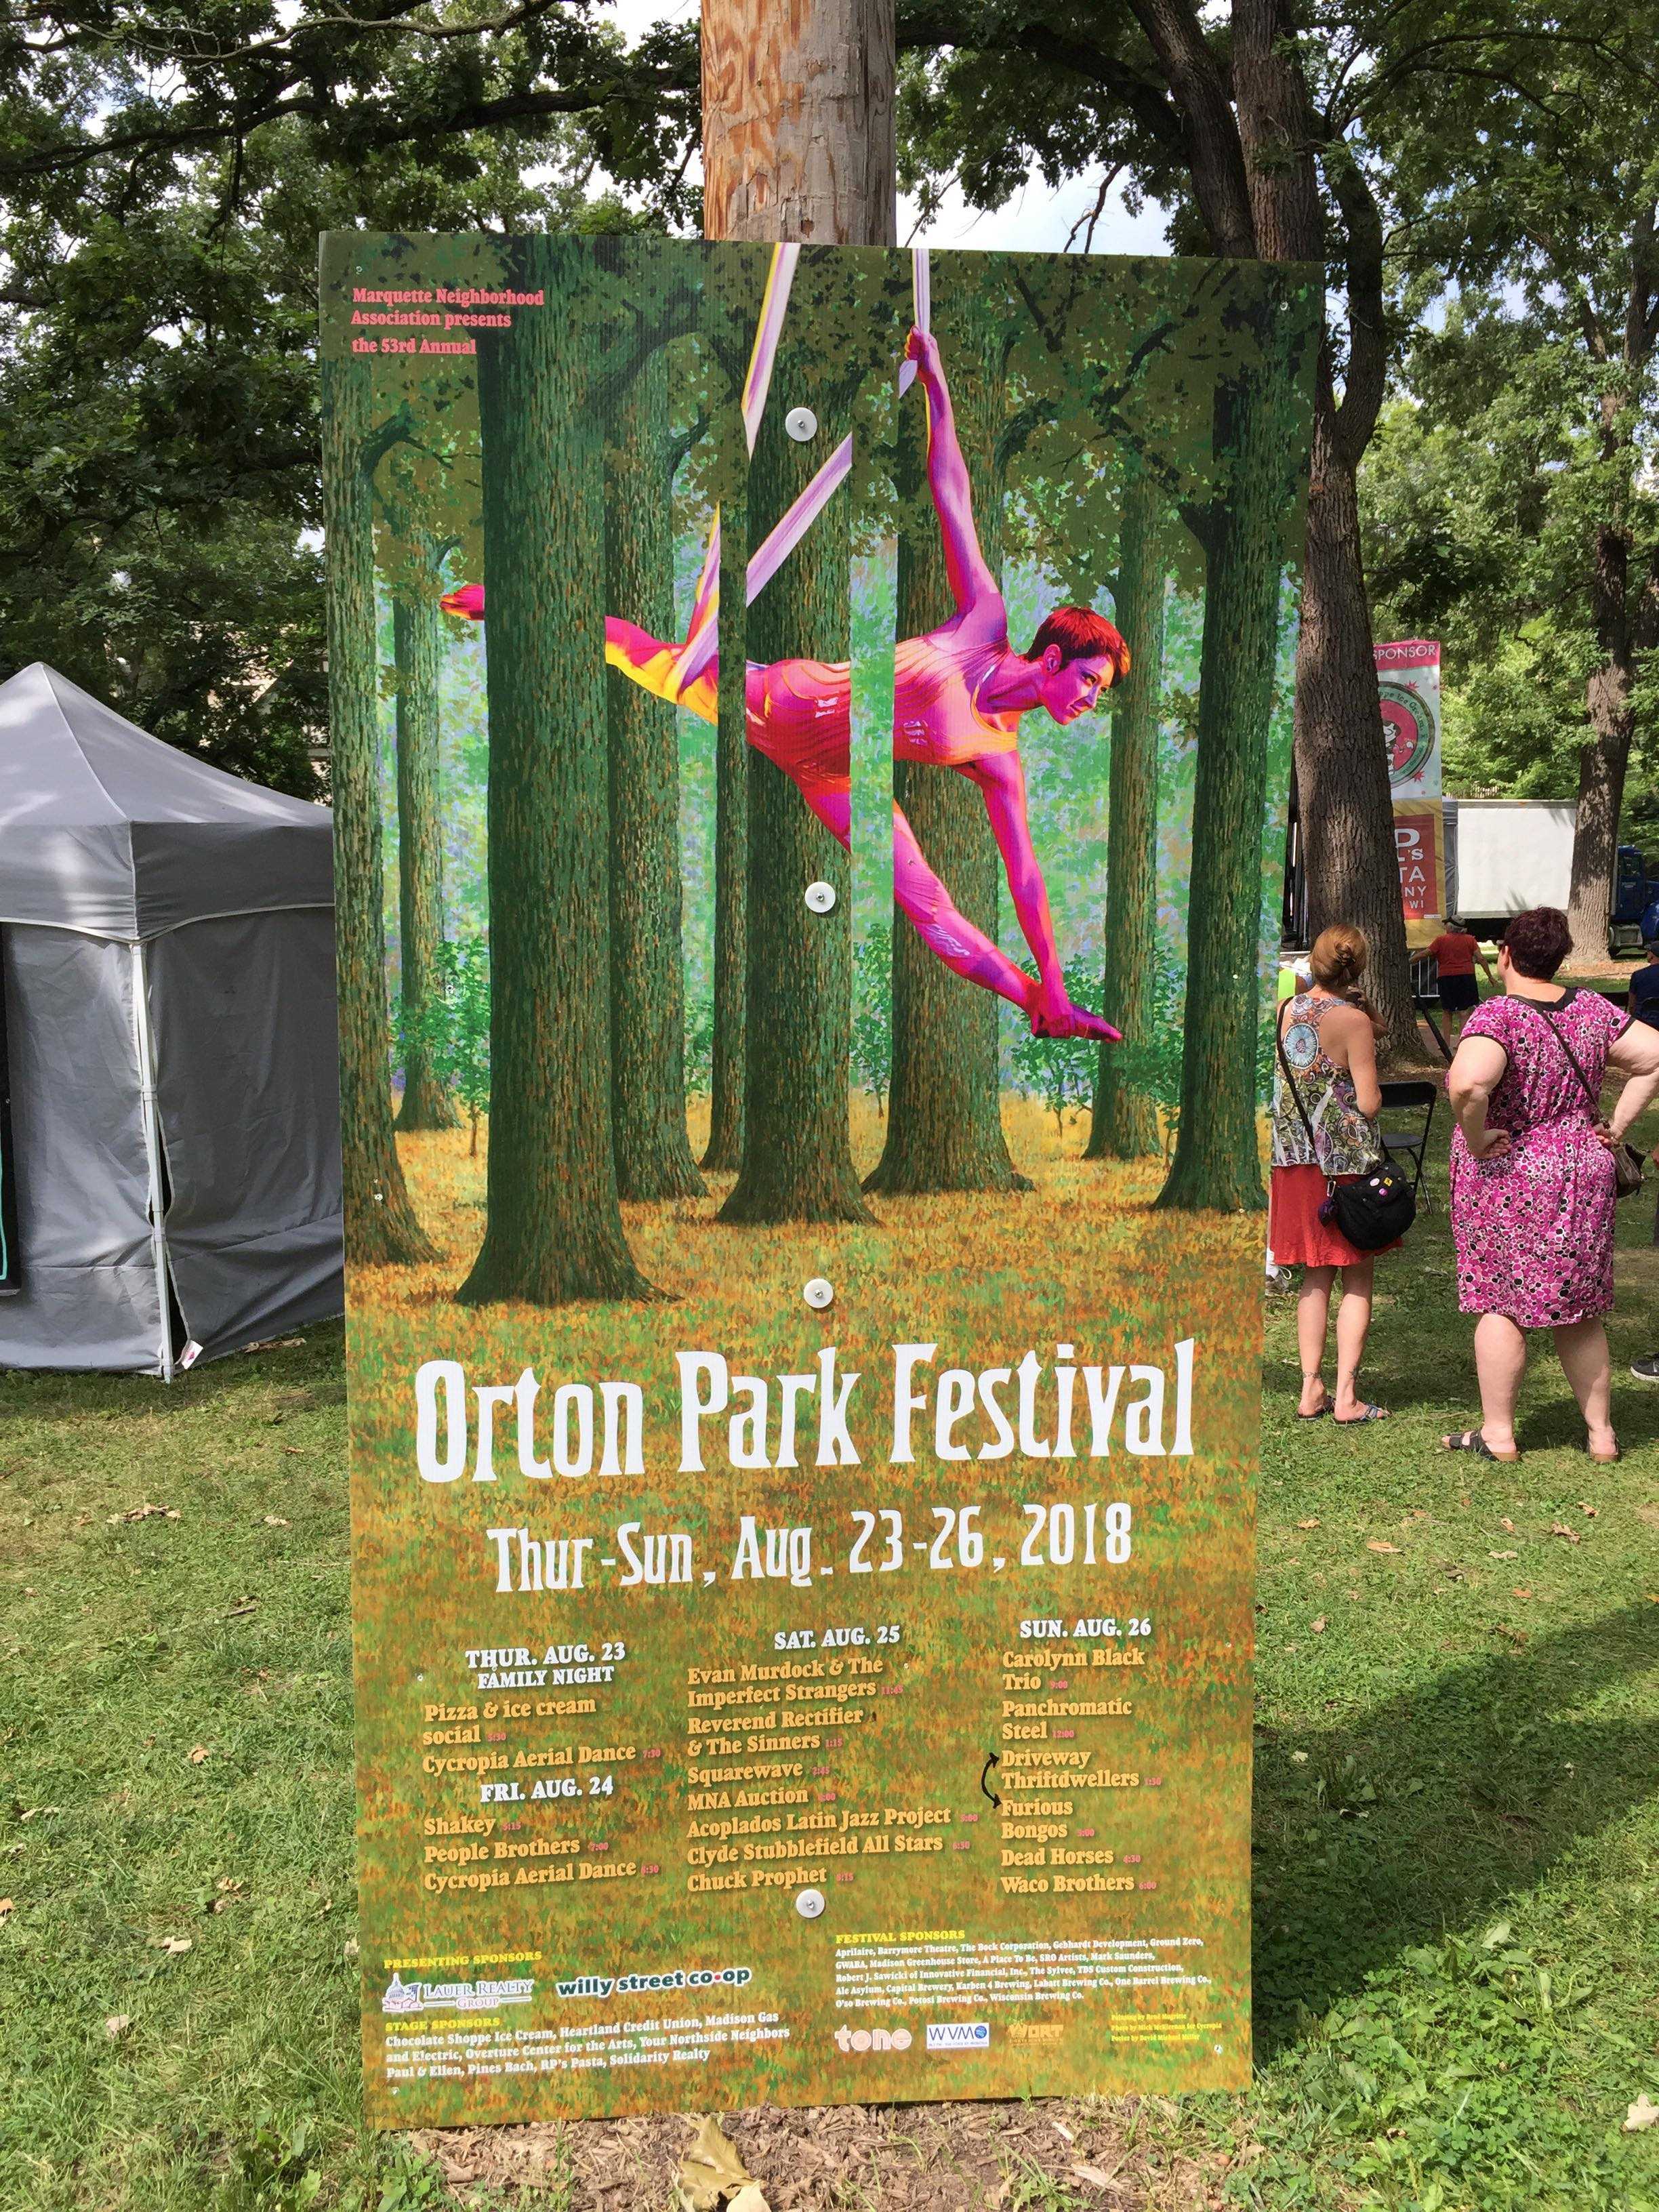 Staple of east side community, Orton Park Festival returns for 53rd